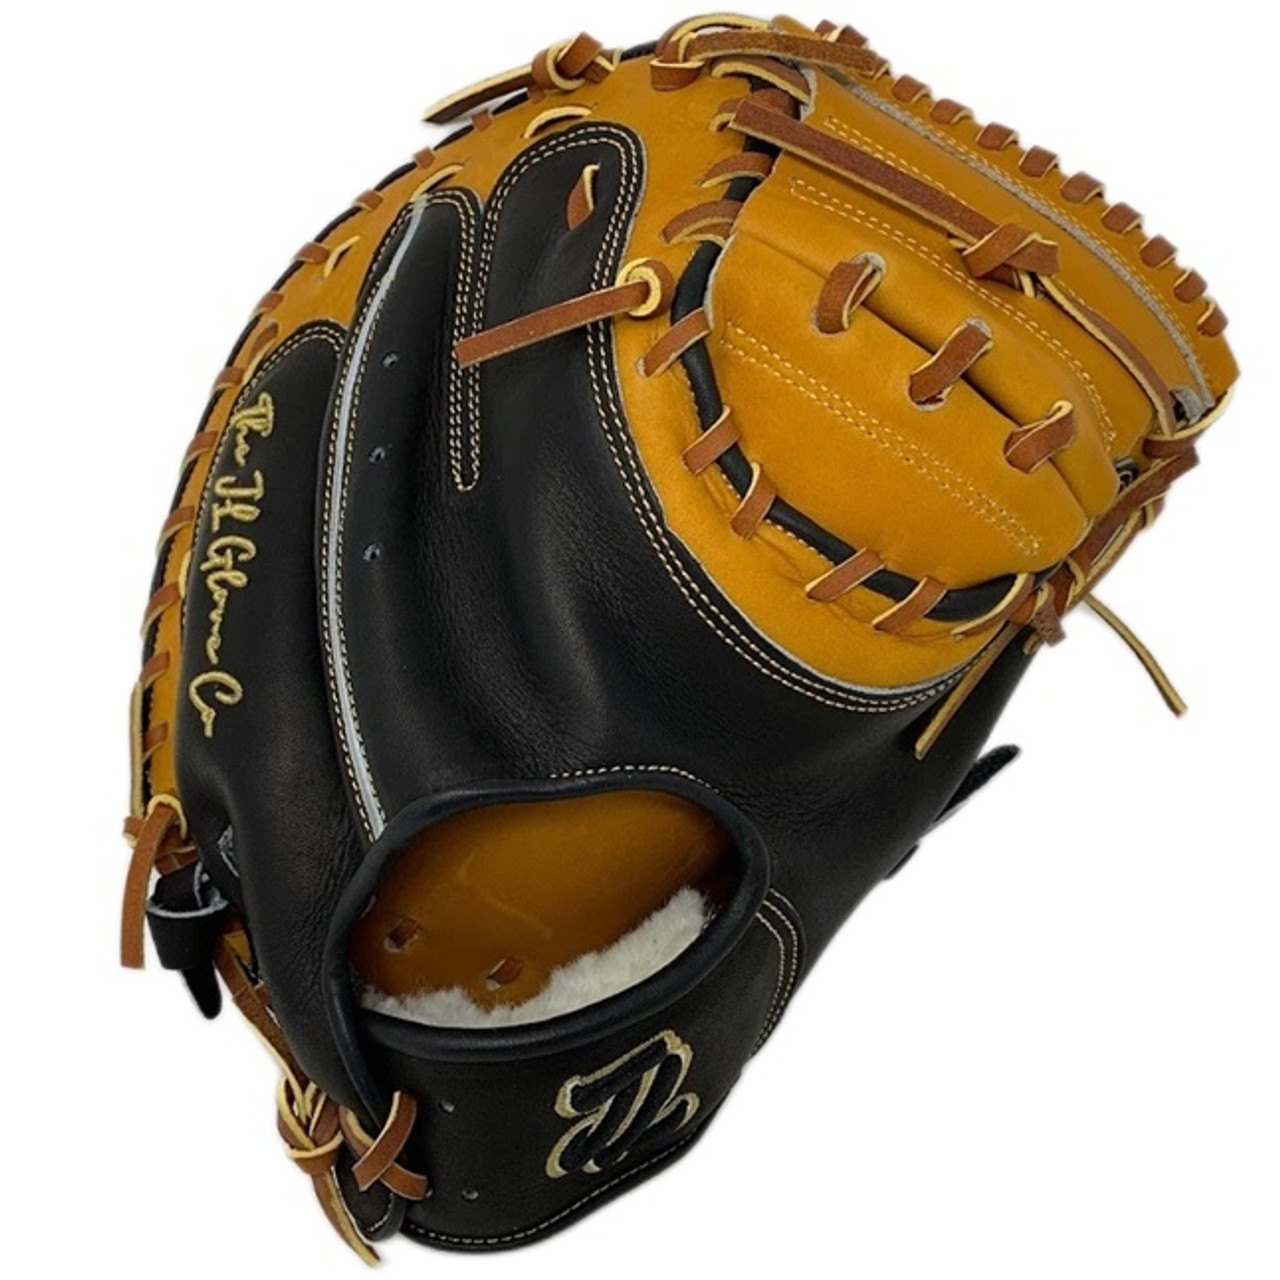 JL Glove Co Baseball Glove SO01 I Web 11.5 Inch 0522 Right Hand